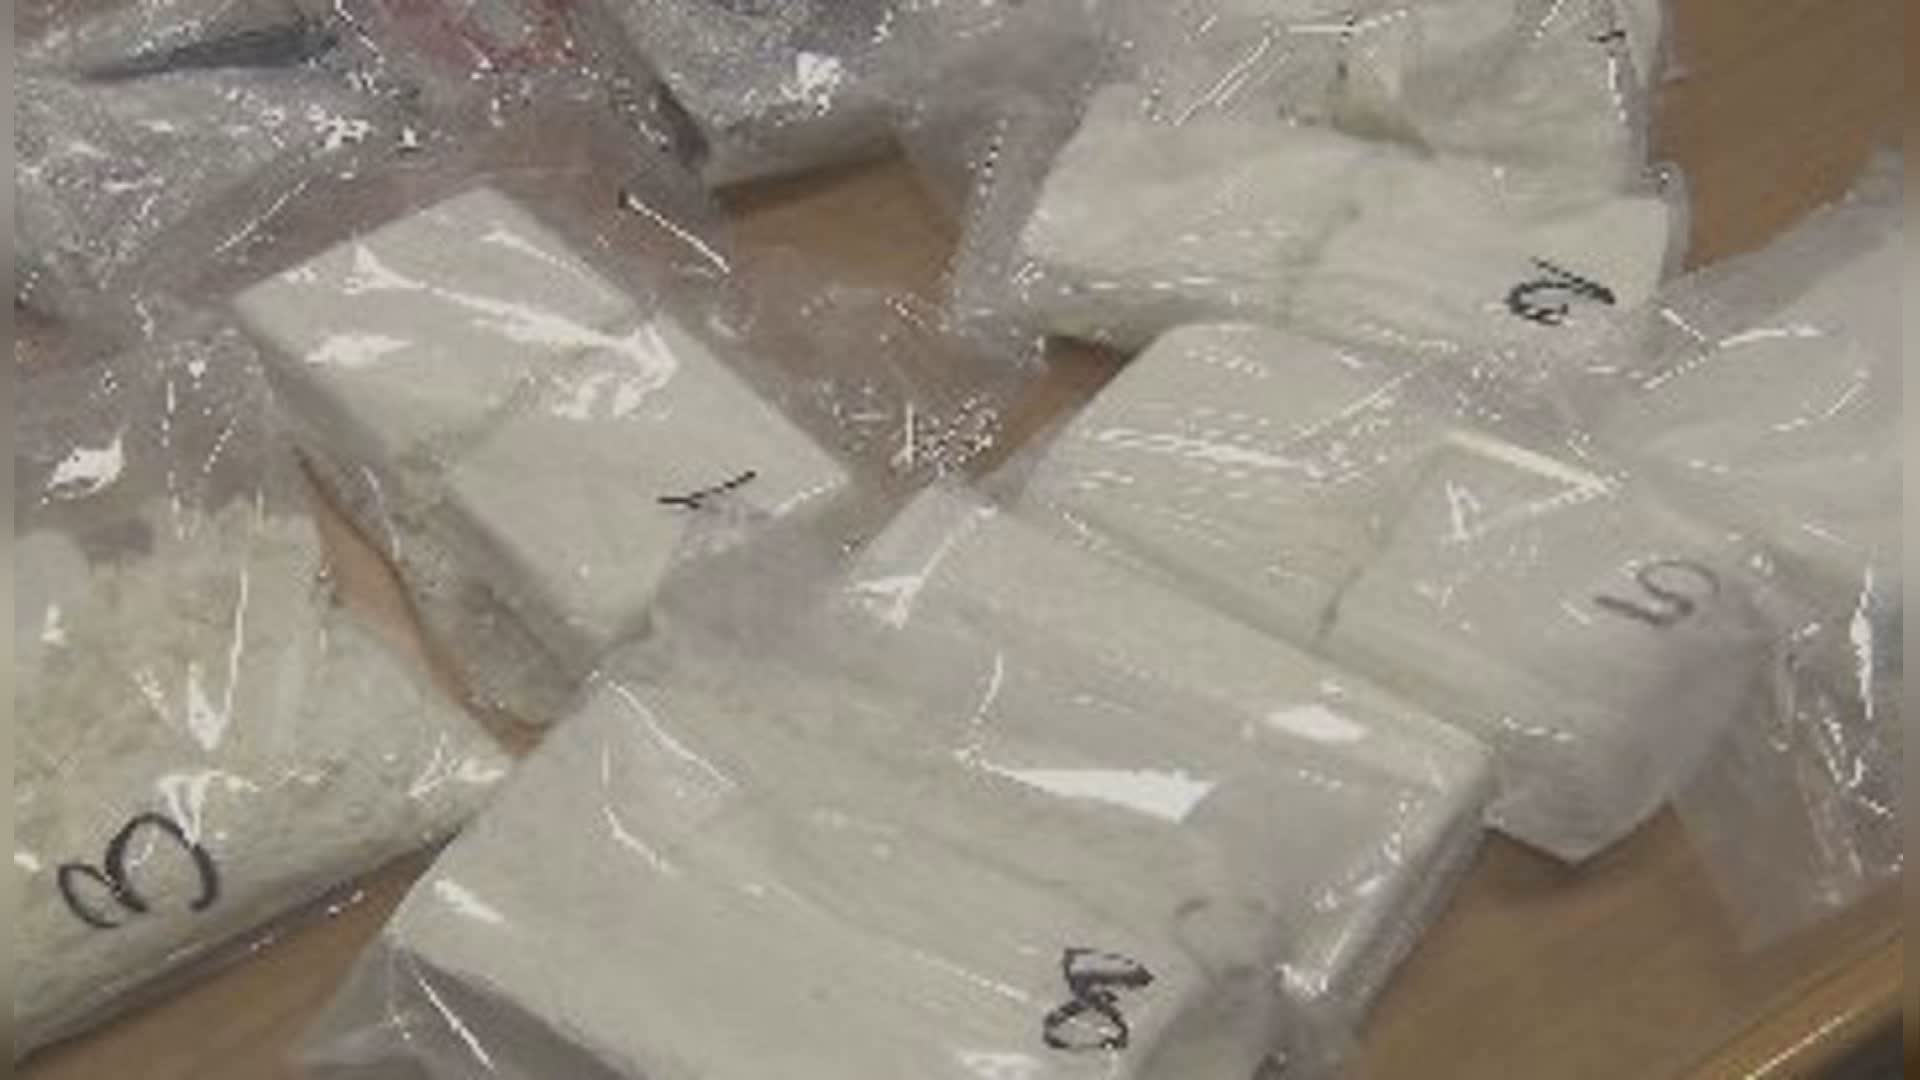 Diano Marina: scoperti 80 g di cocaina durante sfratto, un arresto